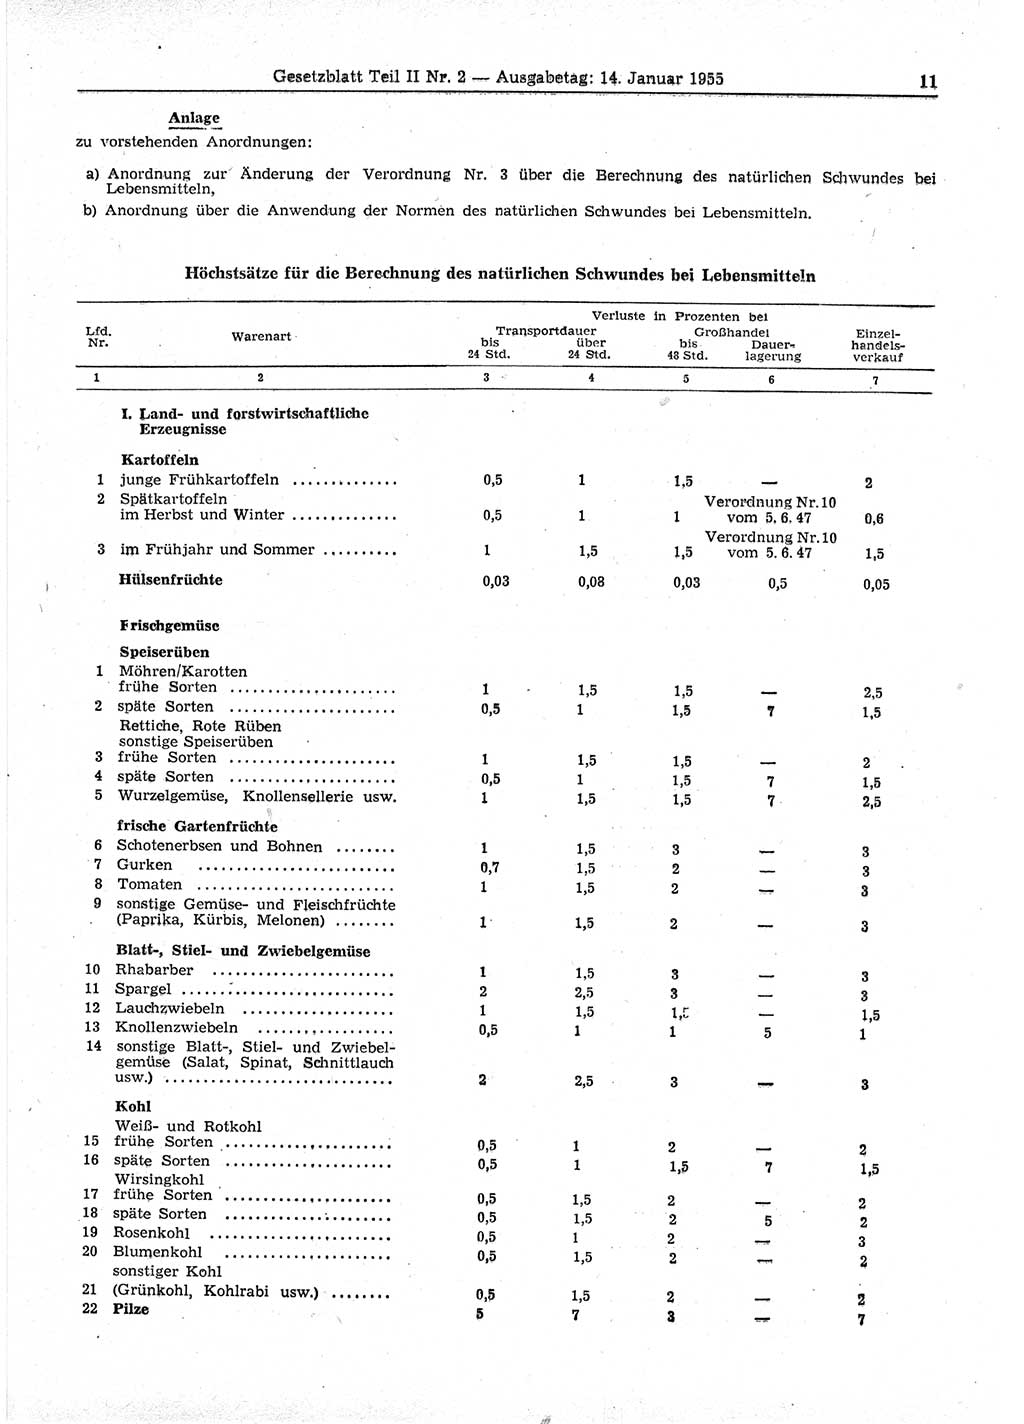 Gesetzblatt (GBl.) der Deutschen Demokratischen Republik (DDR) Teil ⅠⅠ 1955, Seite 11 (GBl. DDR ⅠⅠ 1955, S. 11)